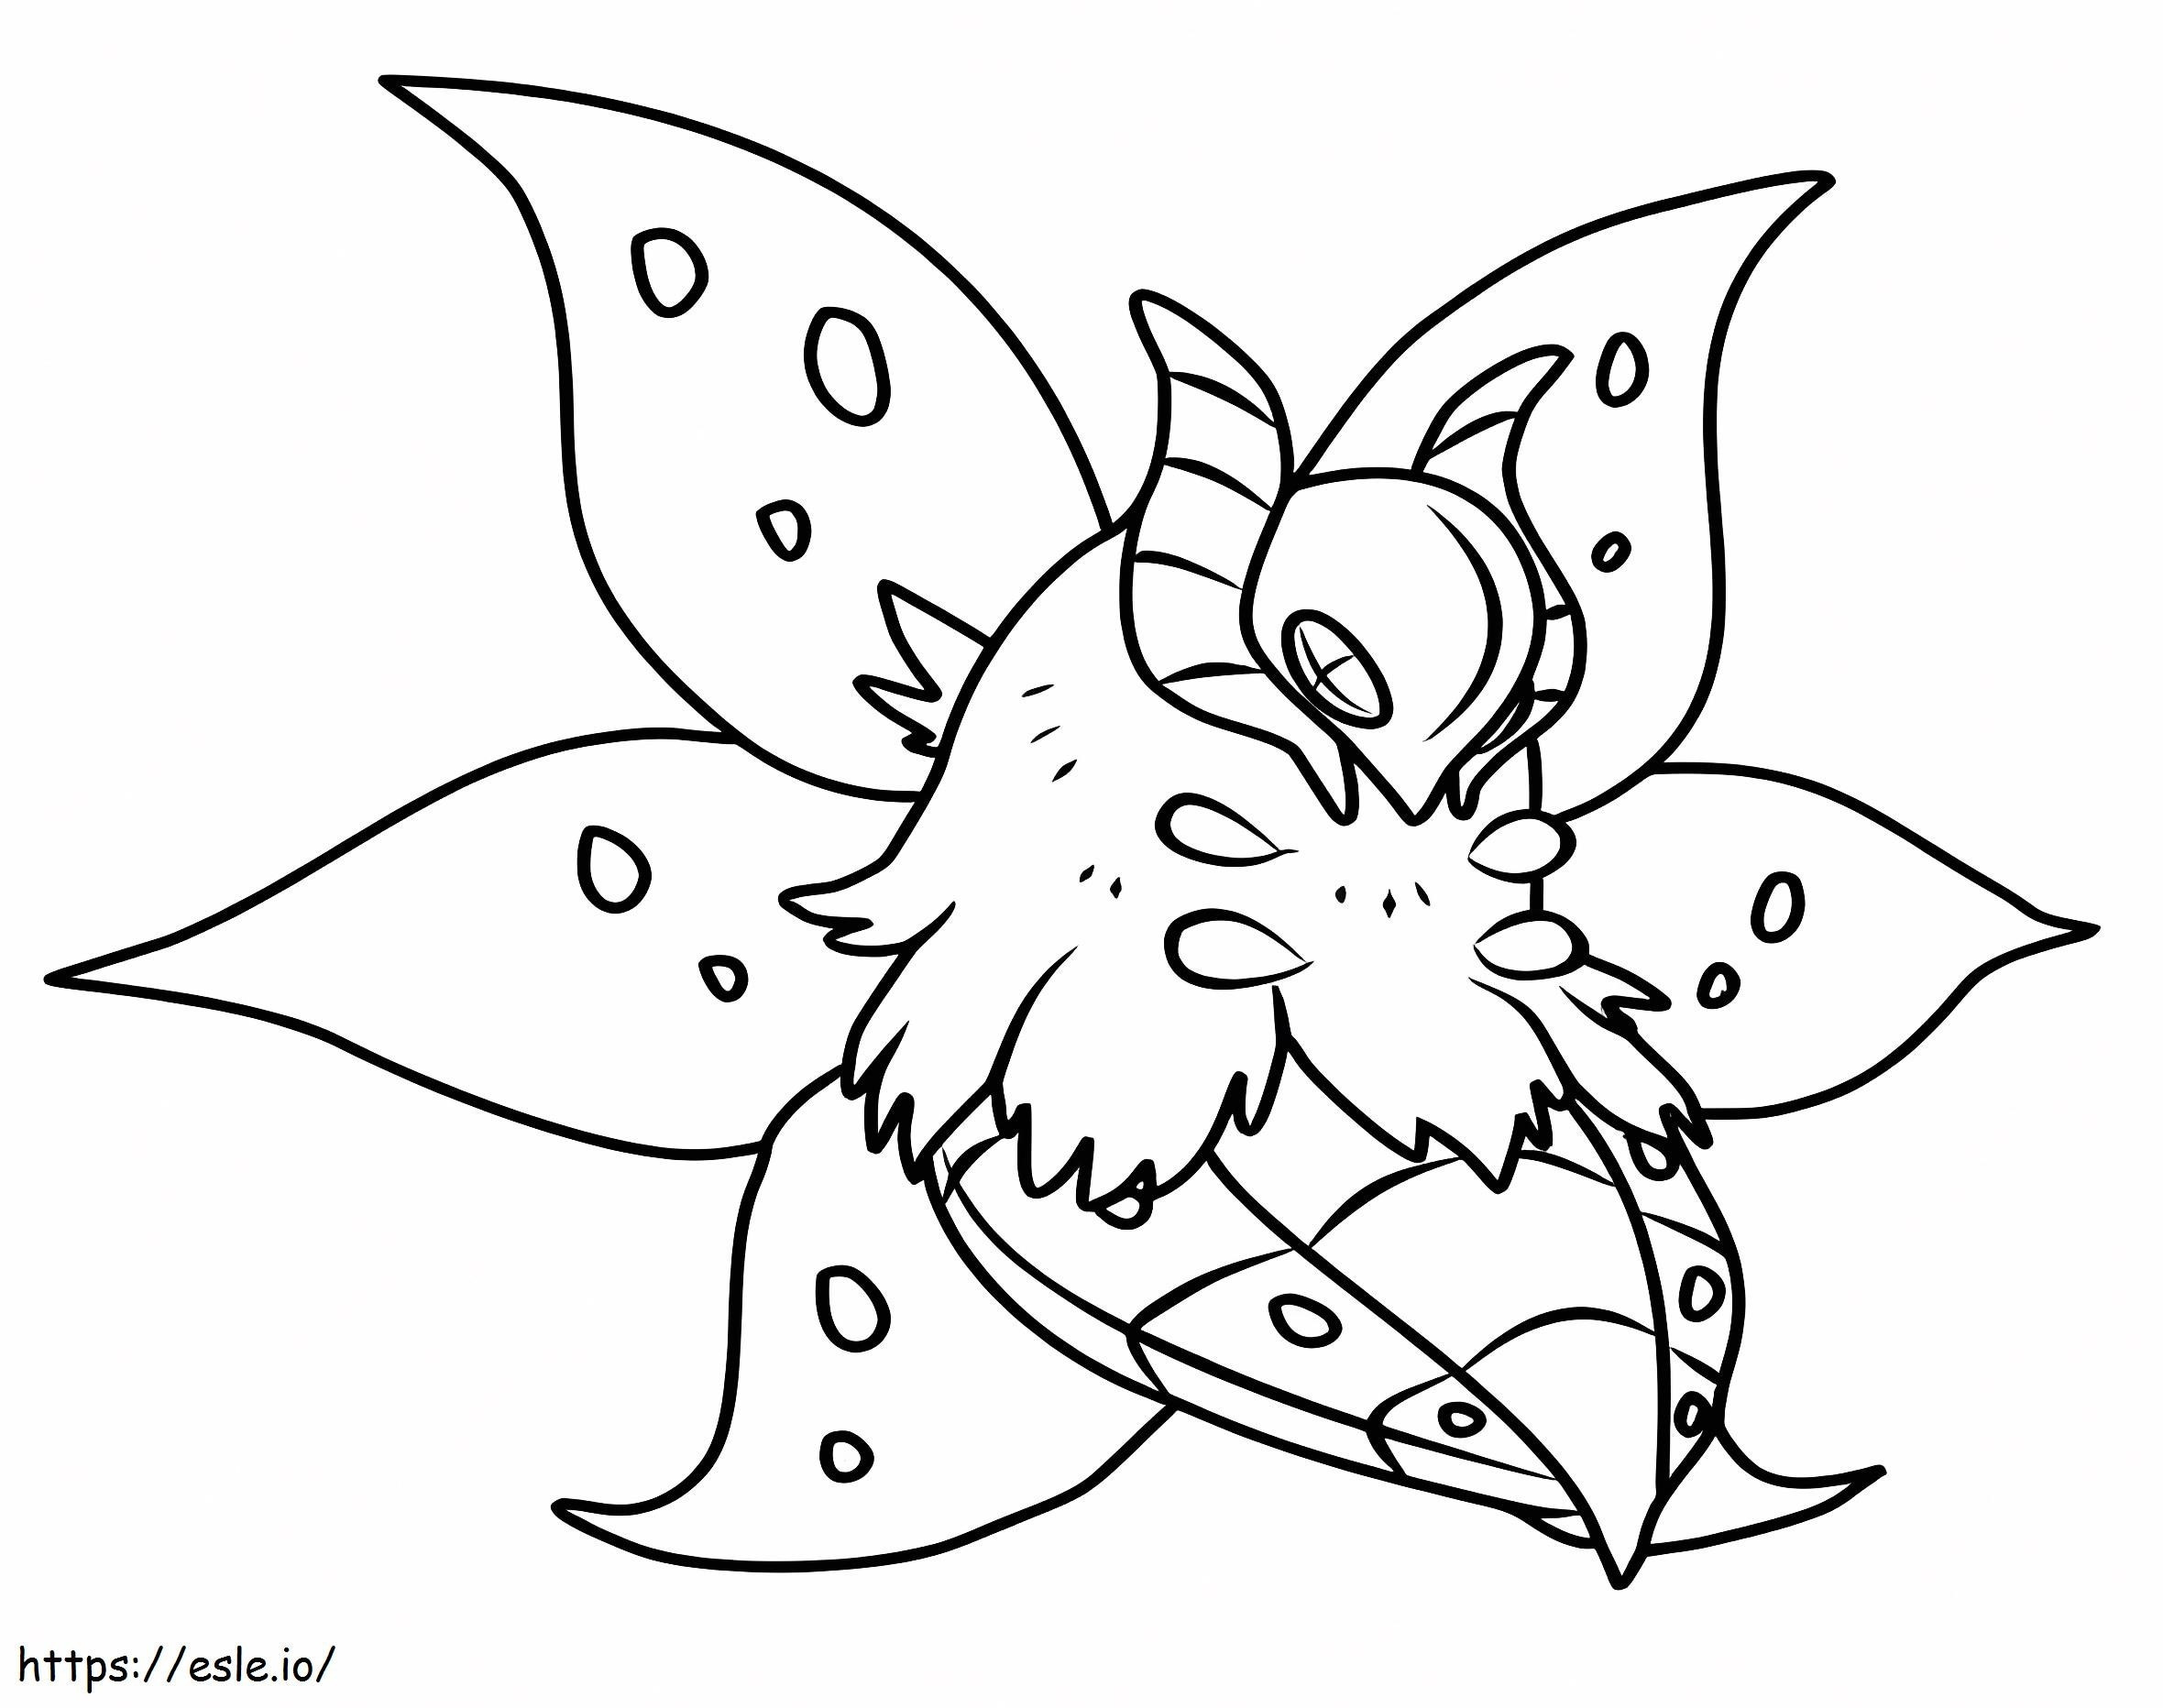 Volcarona Gen 5 Pokemon coloring page